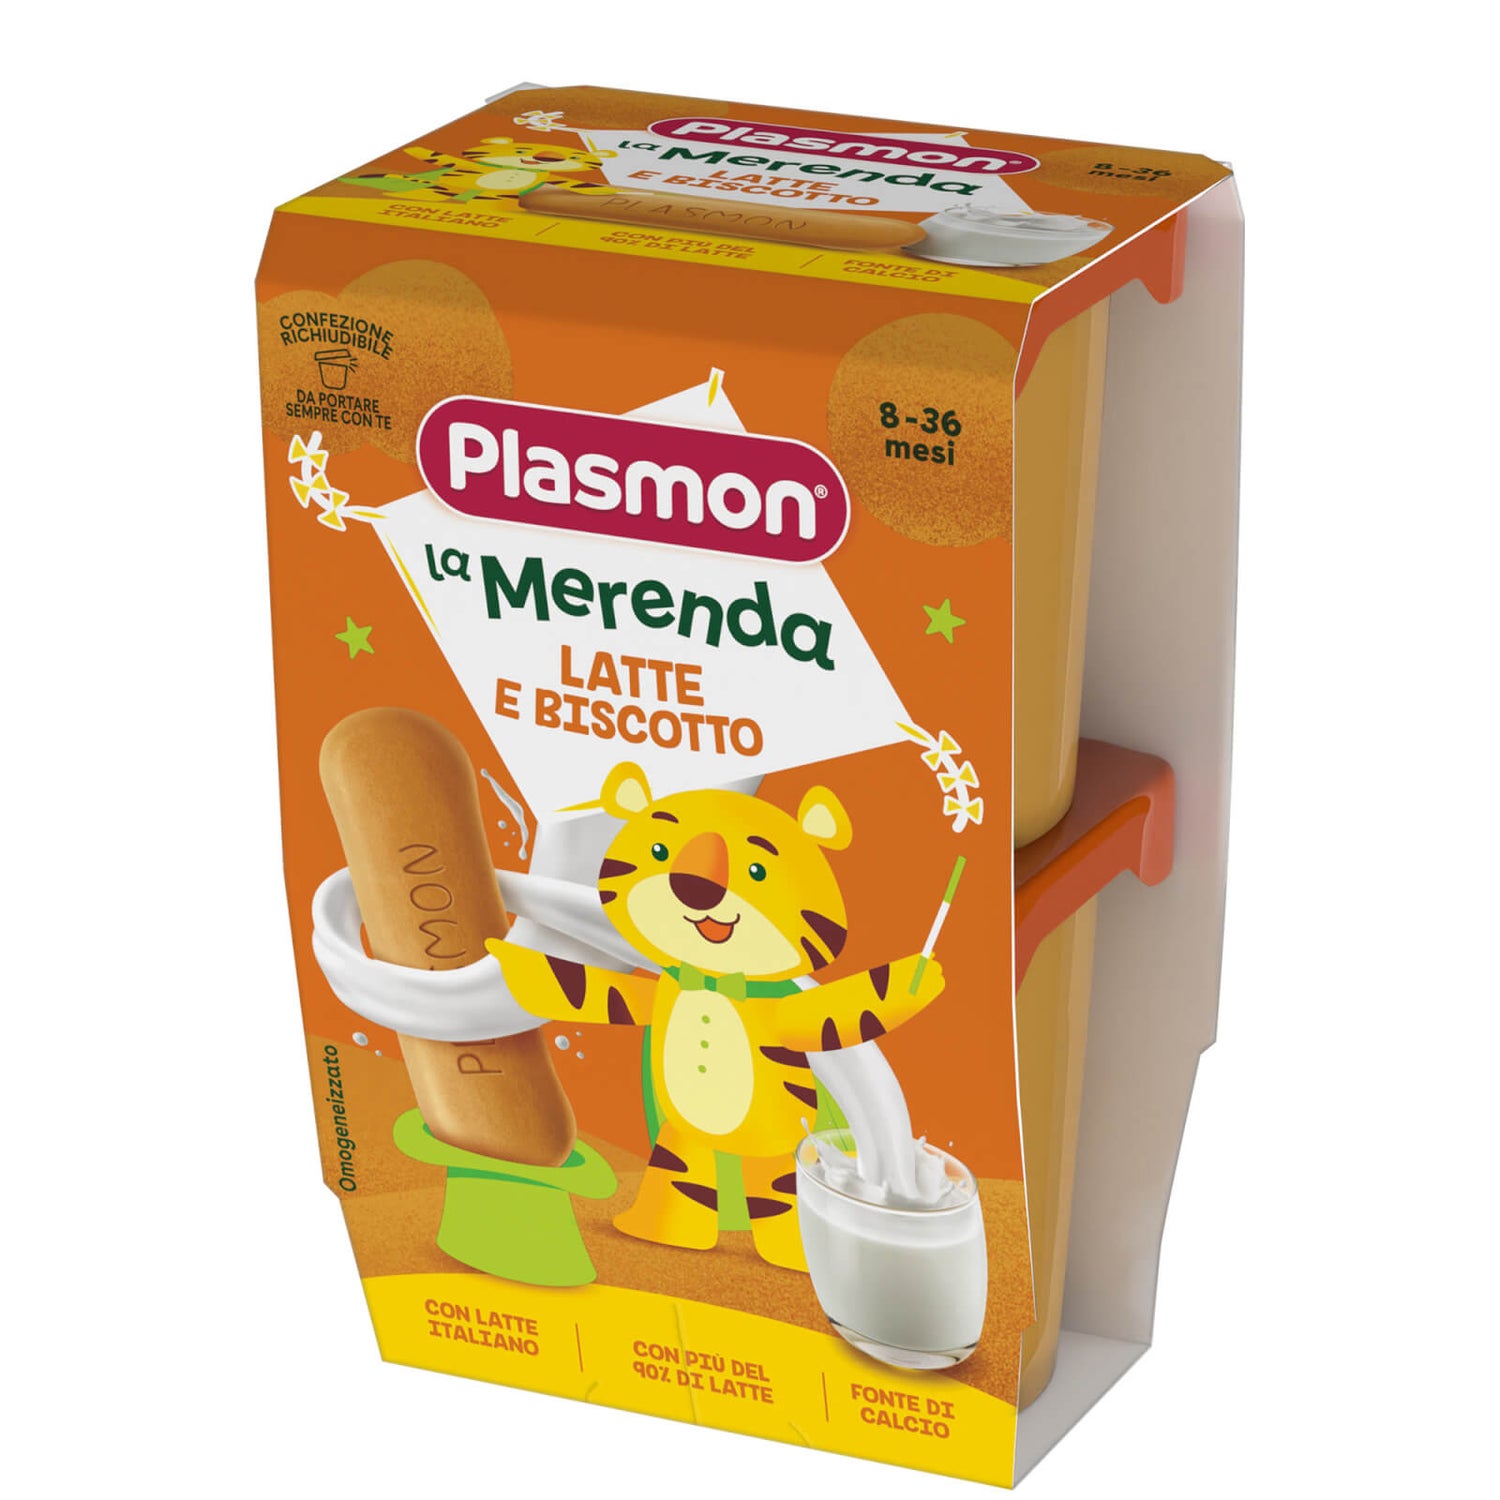 Latte liquido 3 con biscotto Plasmon : Recensioni